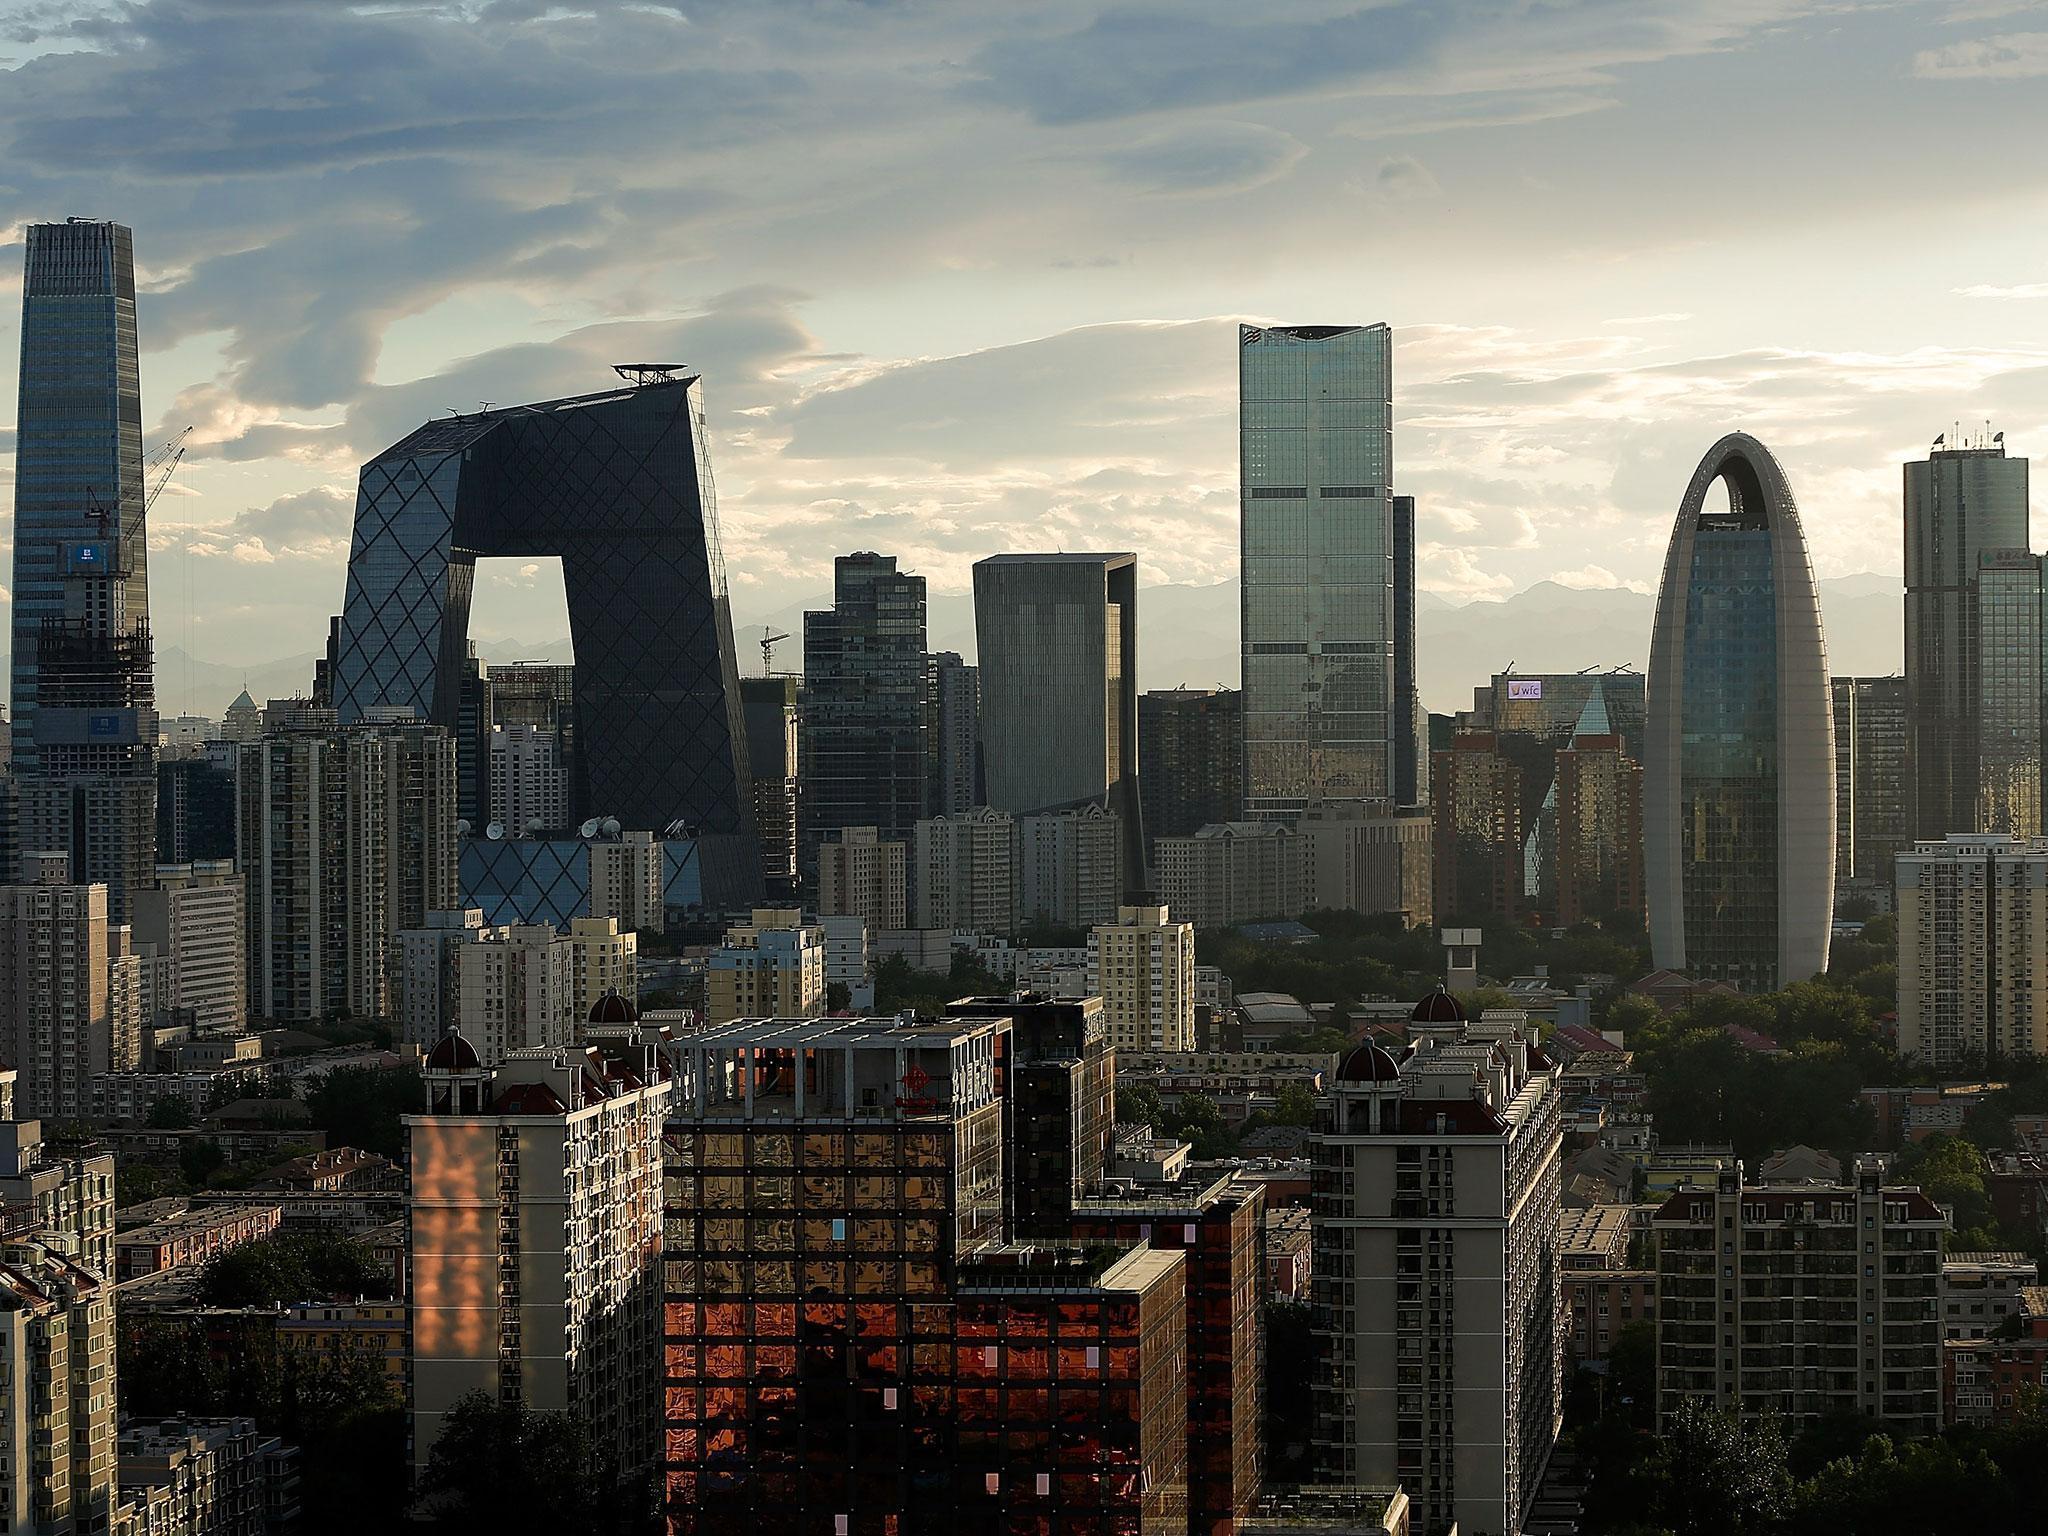 Beijing has seen rapid development in recent years